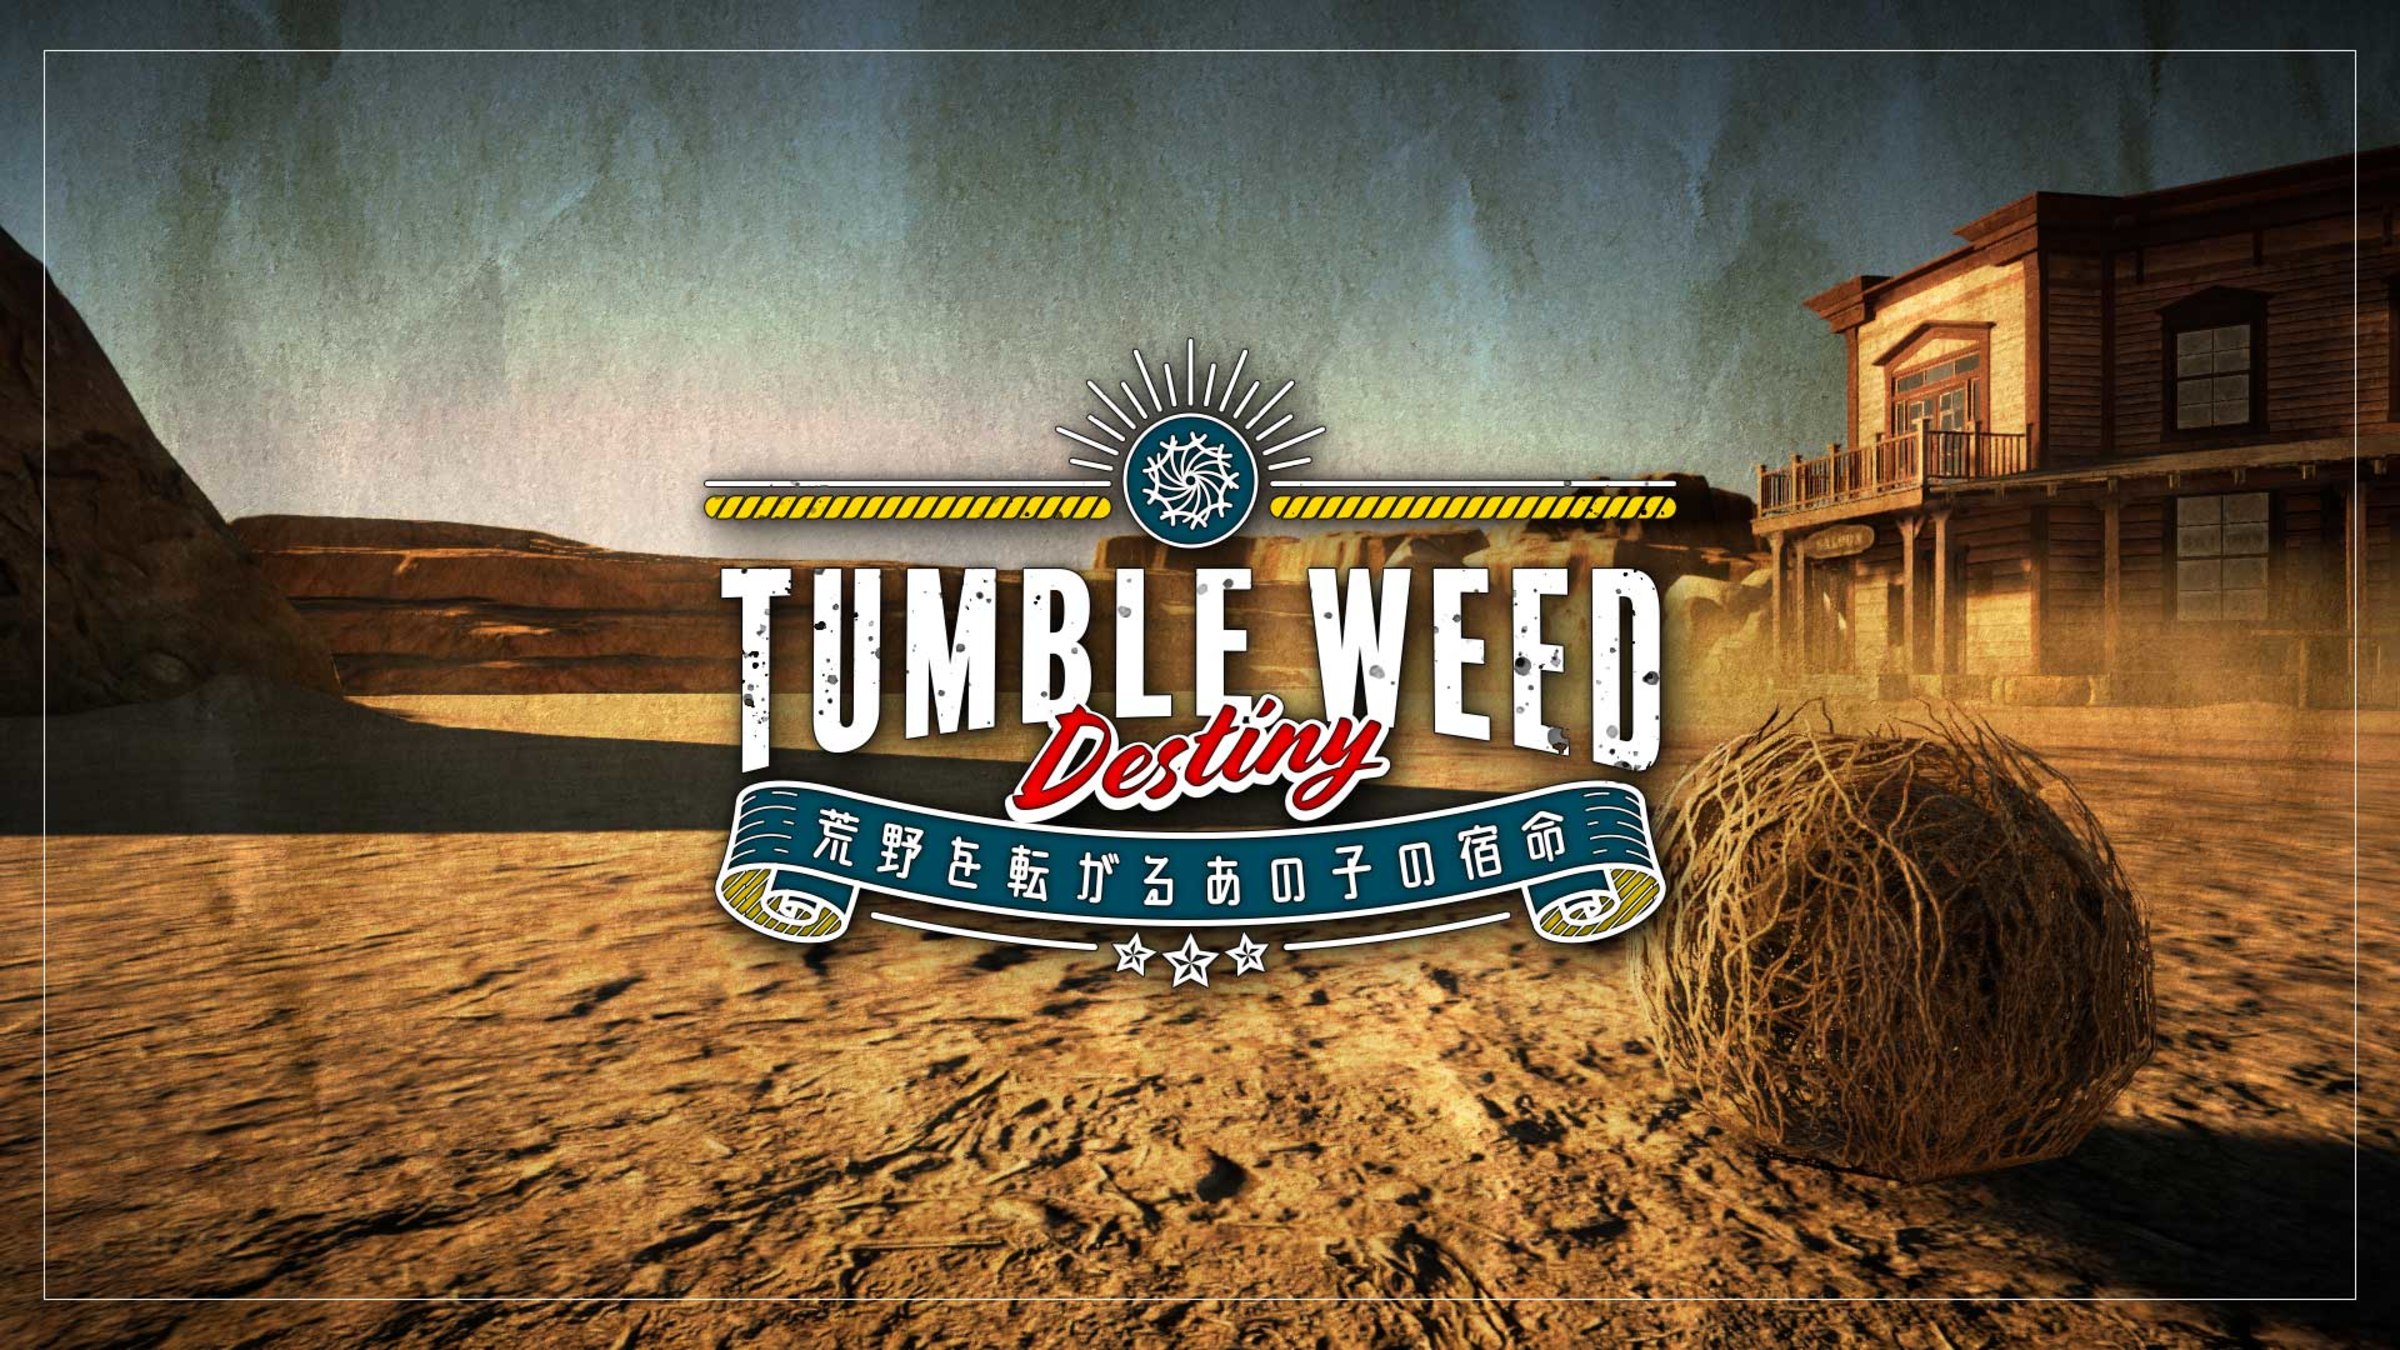 What Makes Tumbleweeds Tumble?